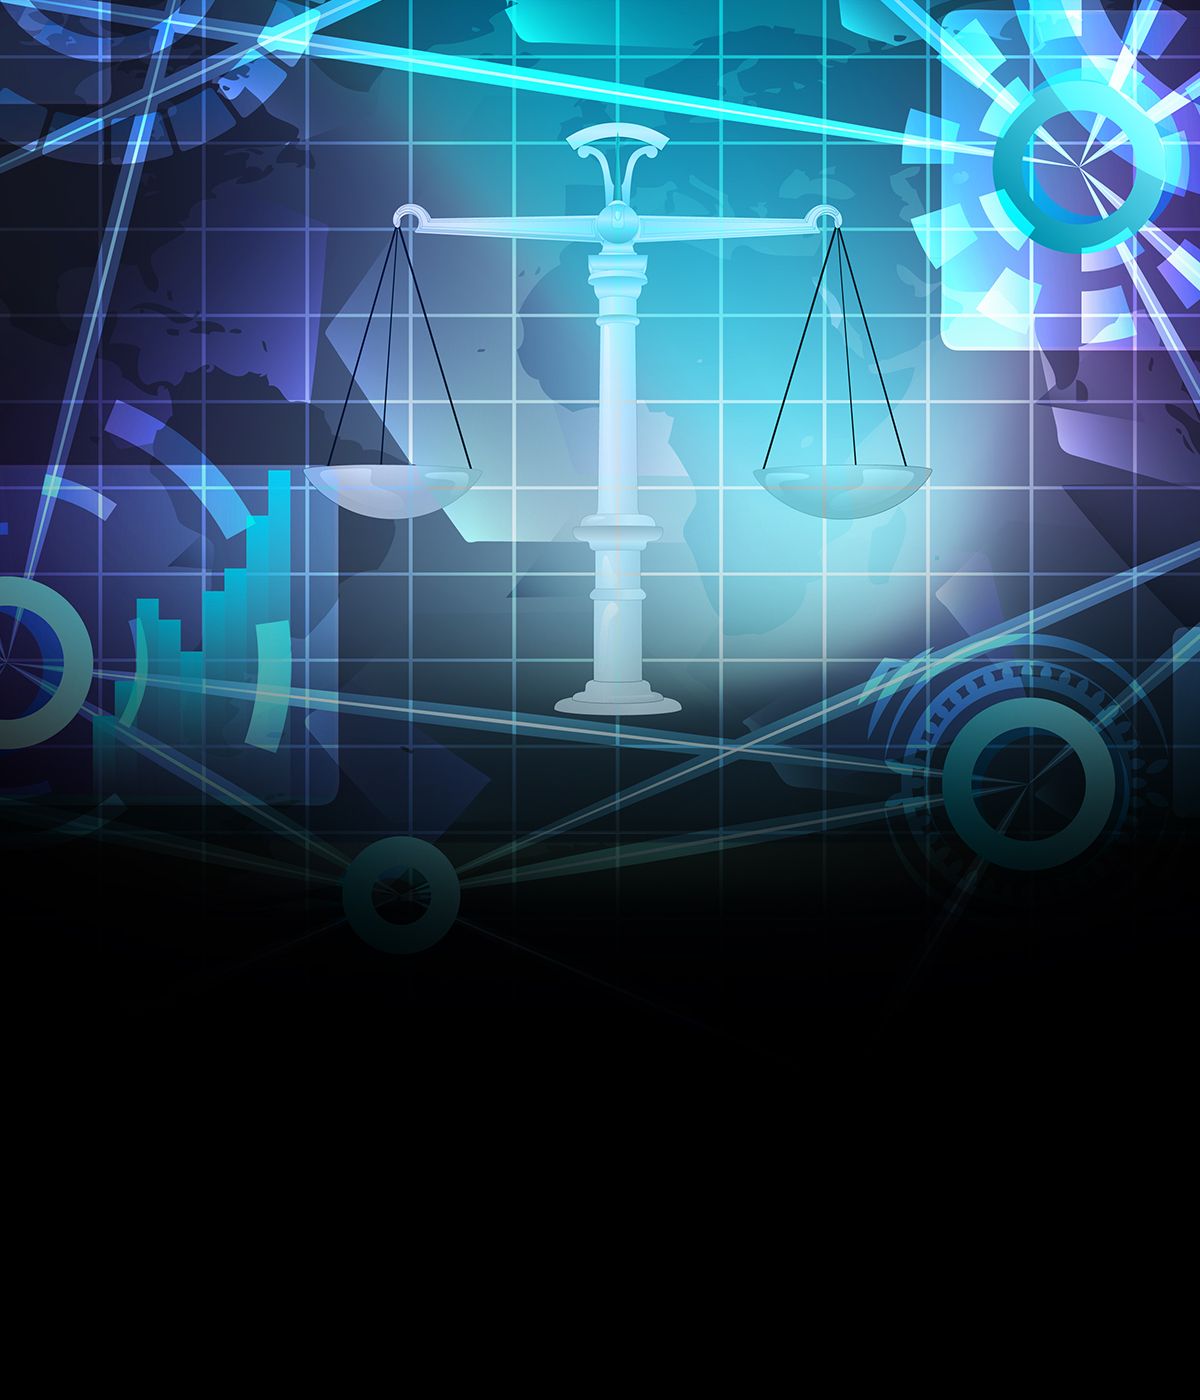 LLM – Intellectual Property & Technology Law